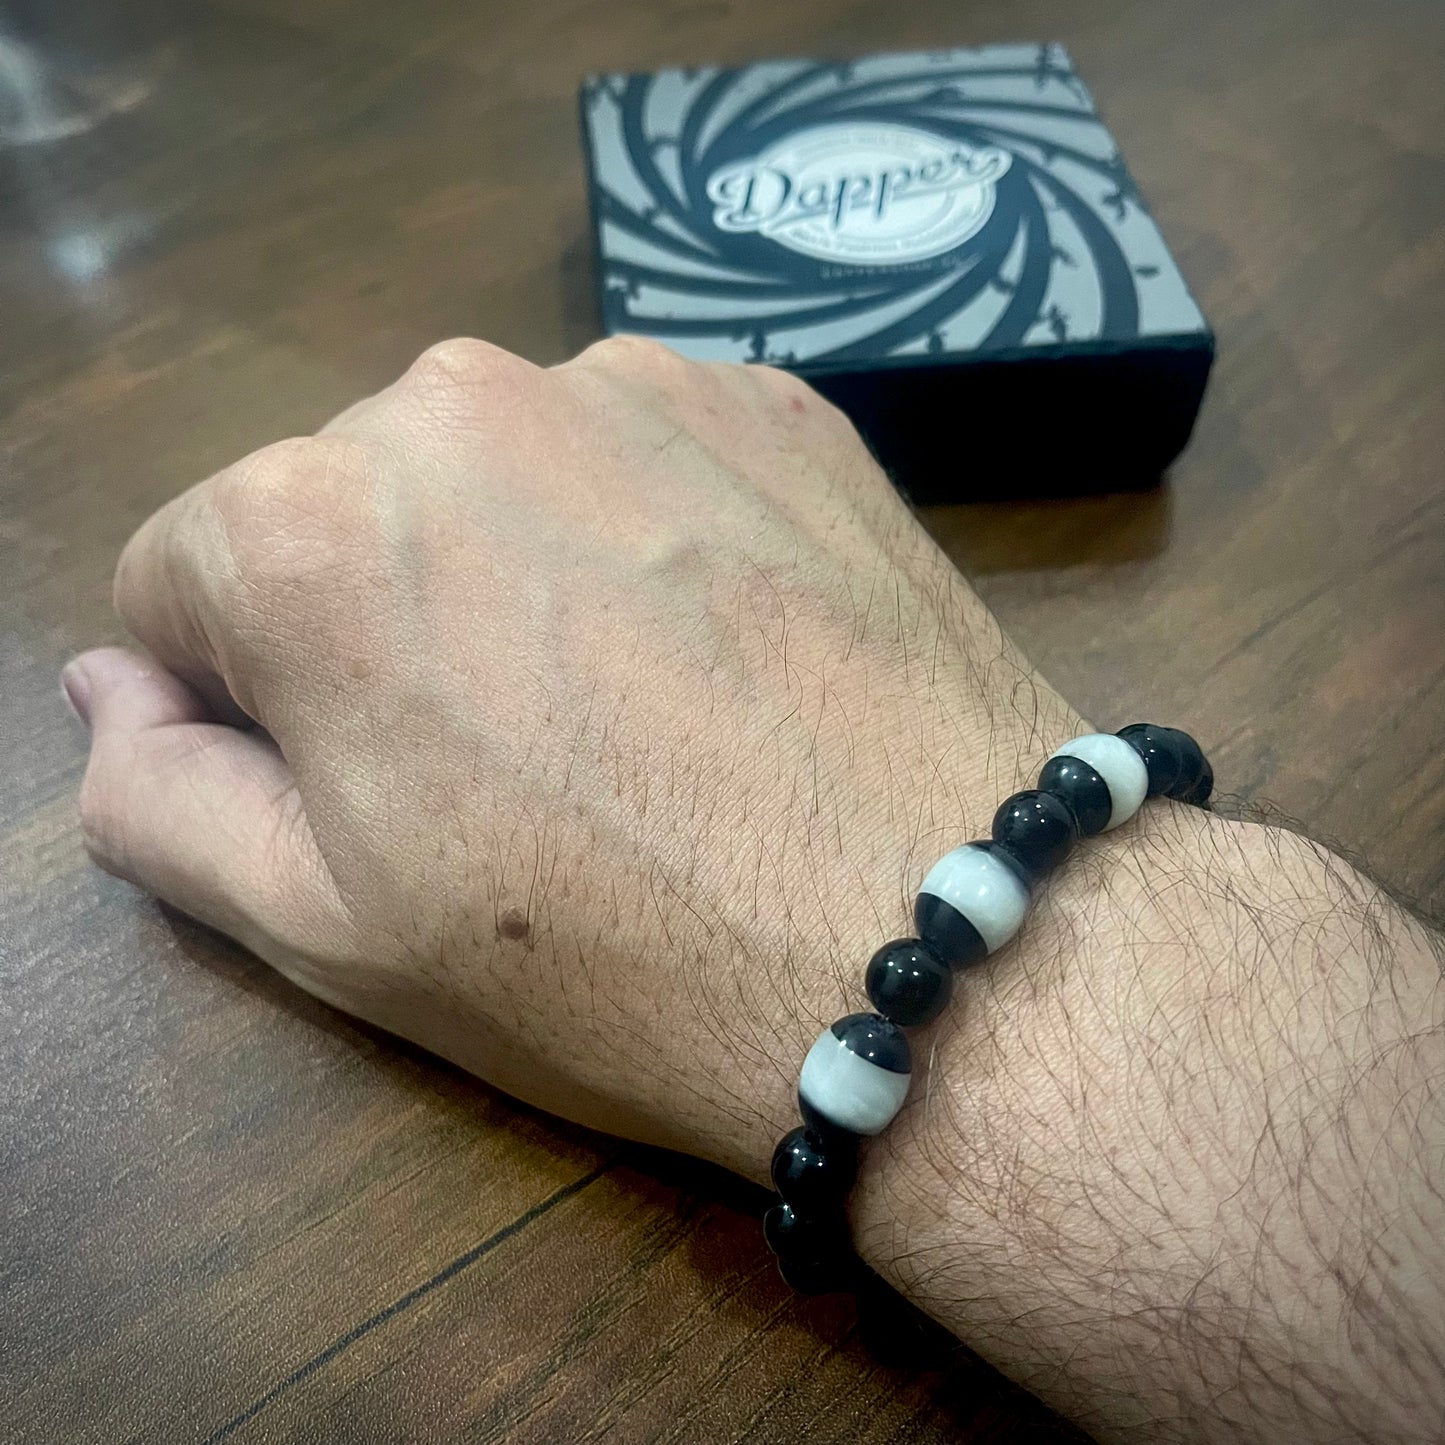 Natural White monk energy stone beads bracelt for men women in pakistan